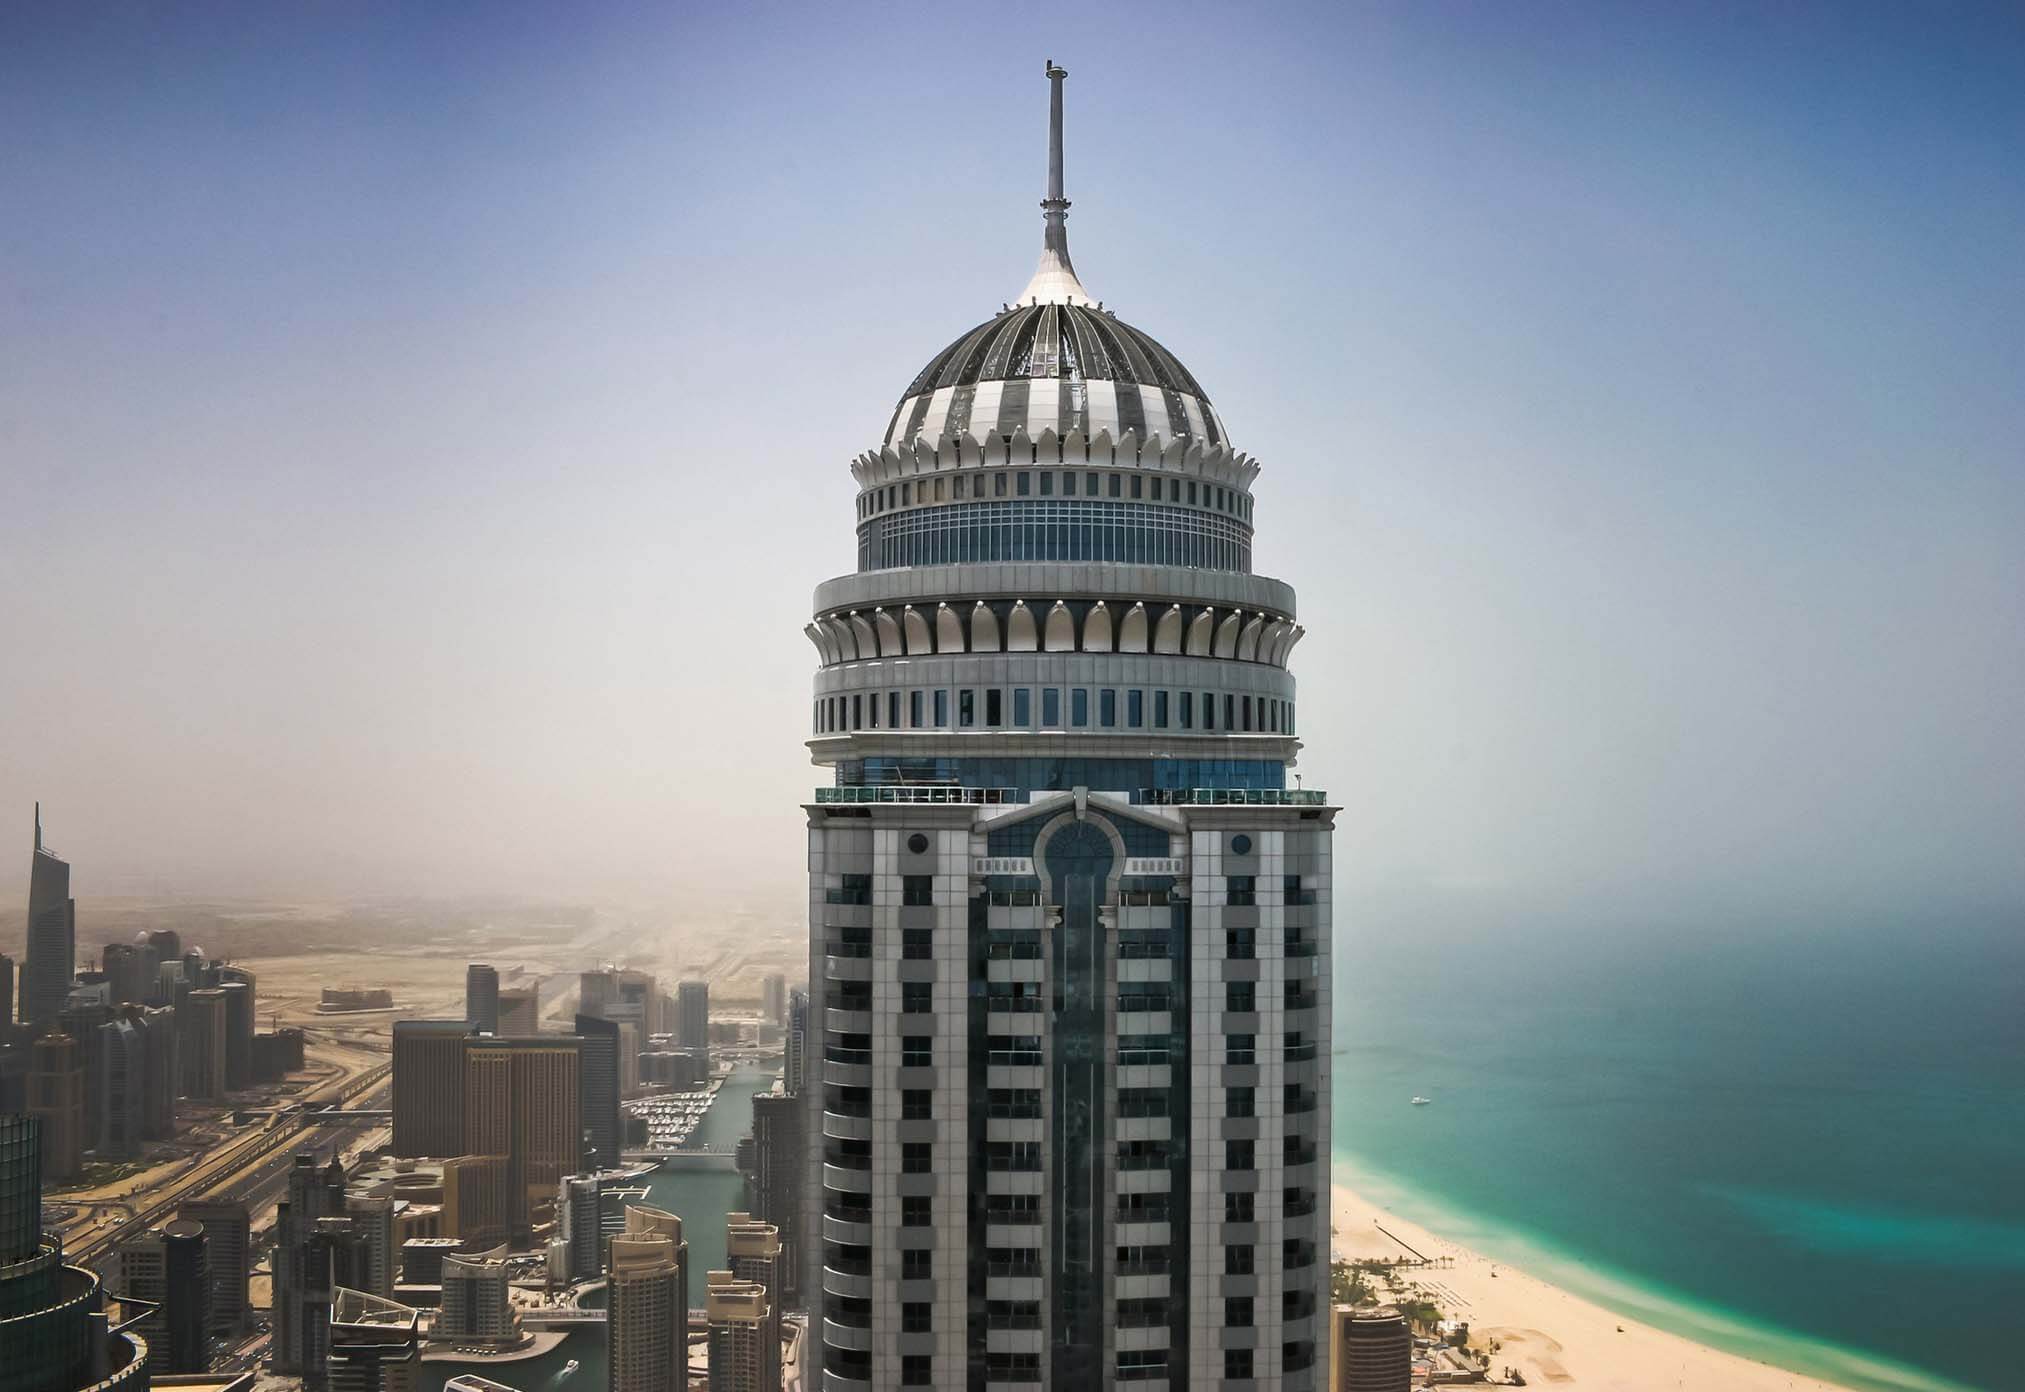 Dubai's princess tower